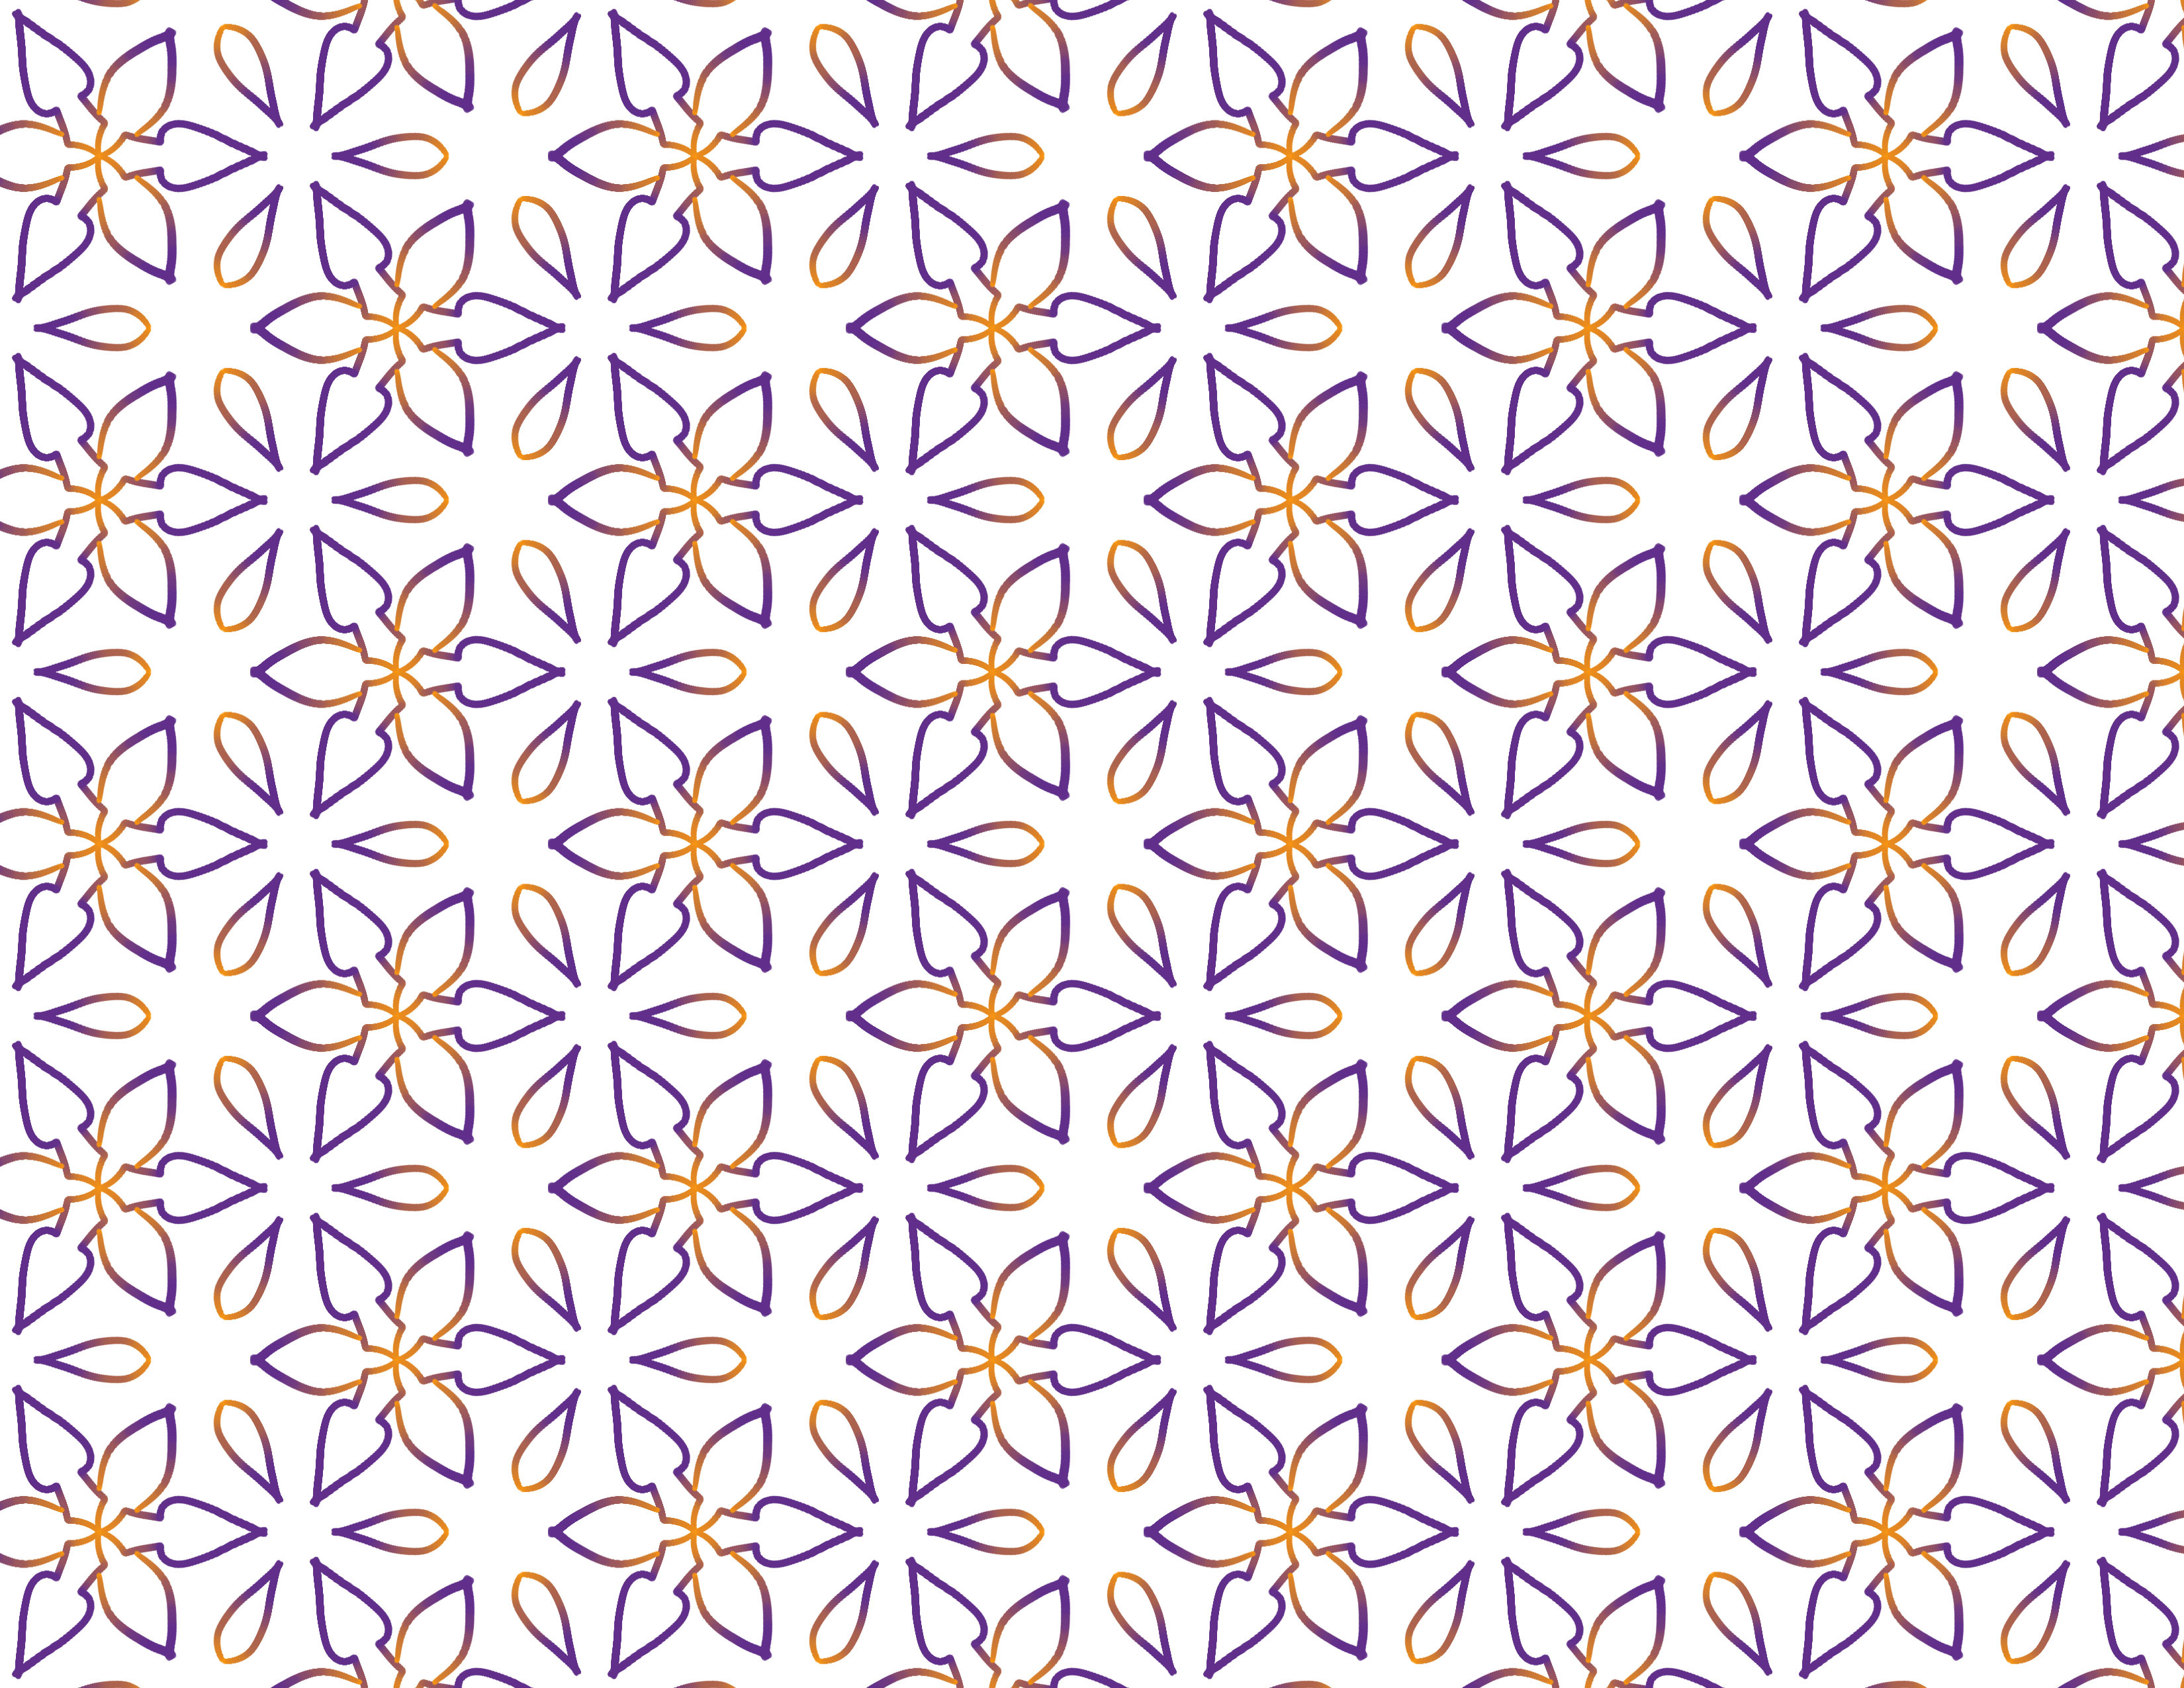 gradient flower pattern background free download